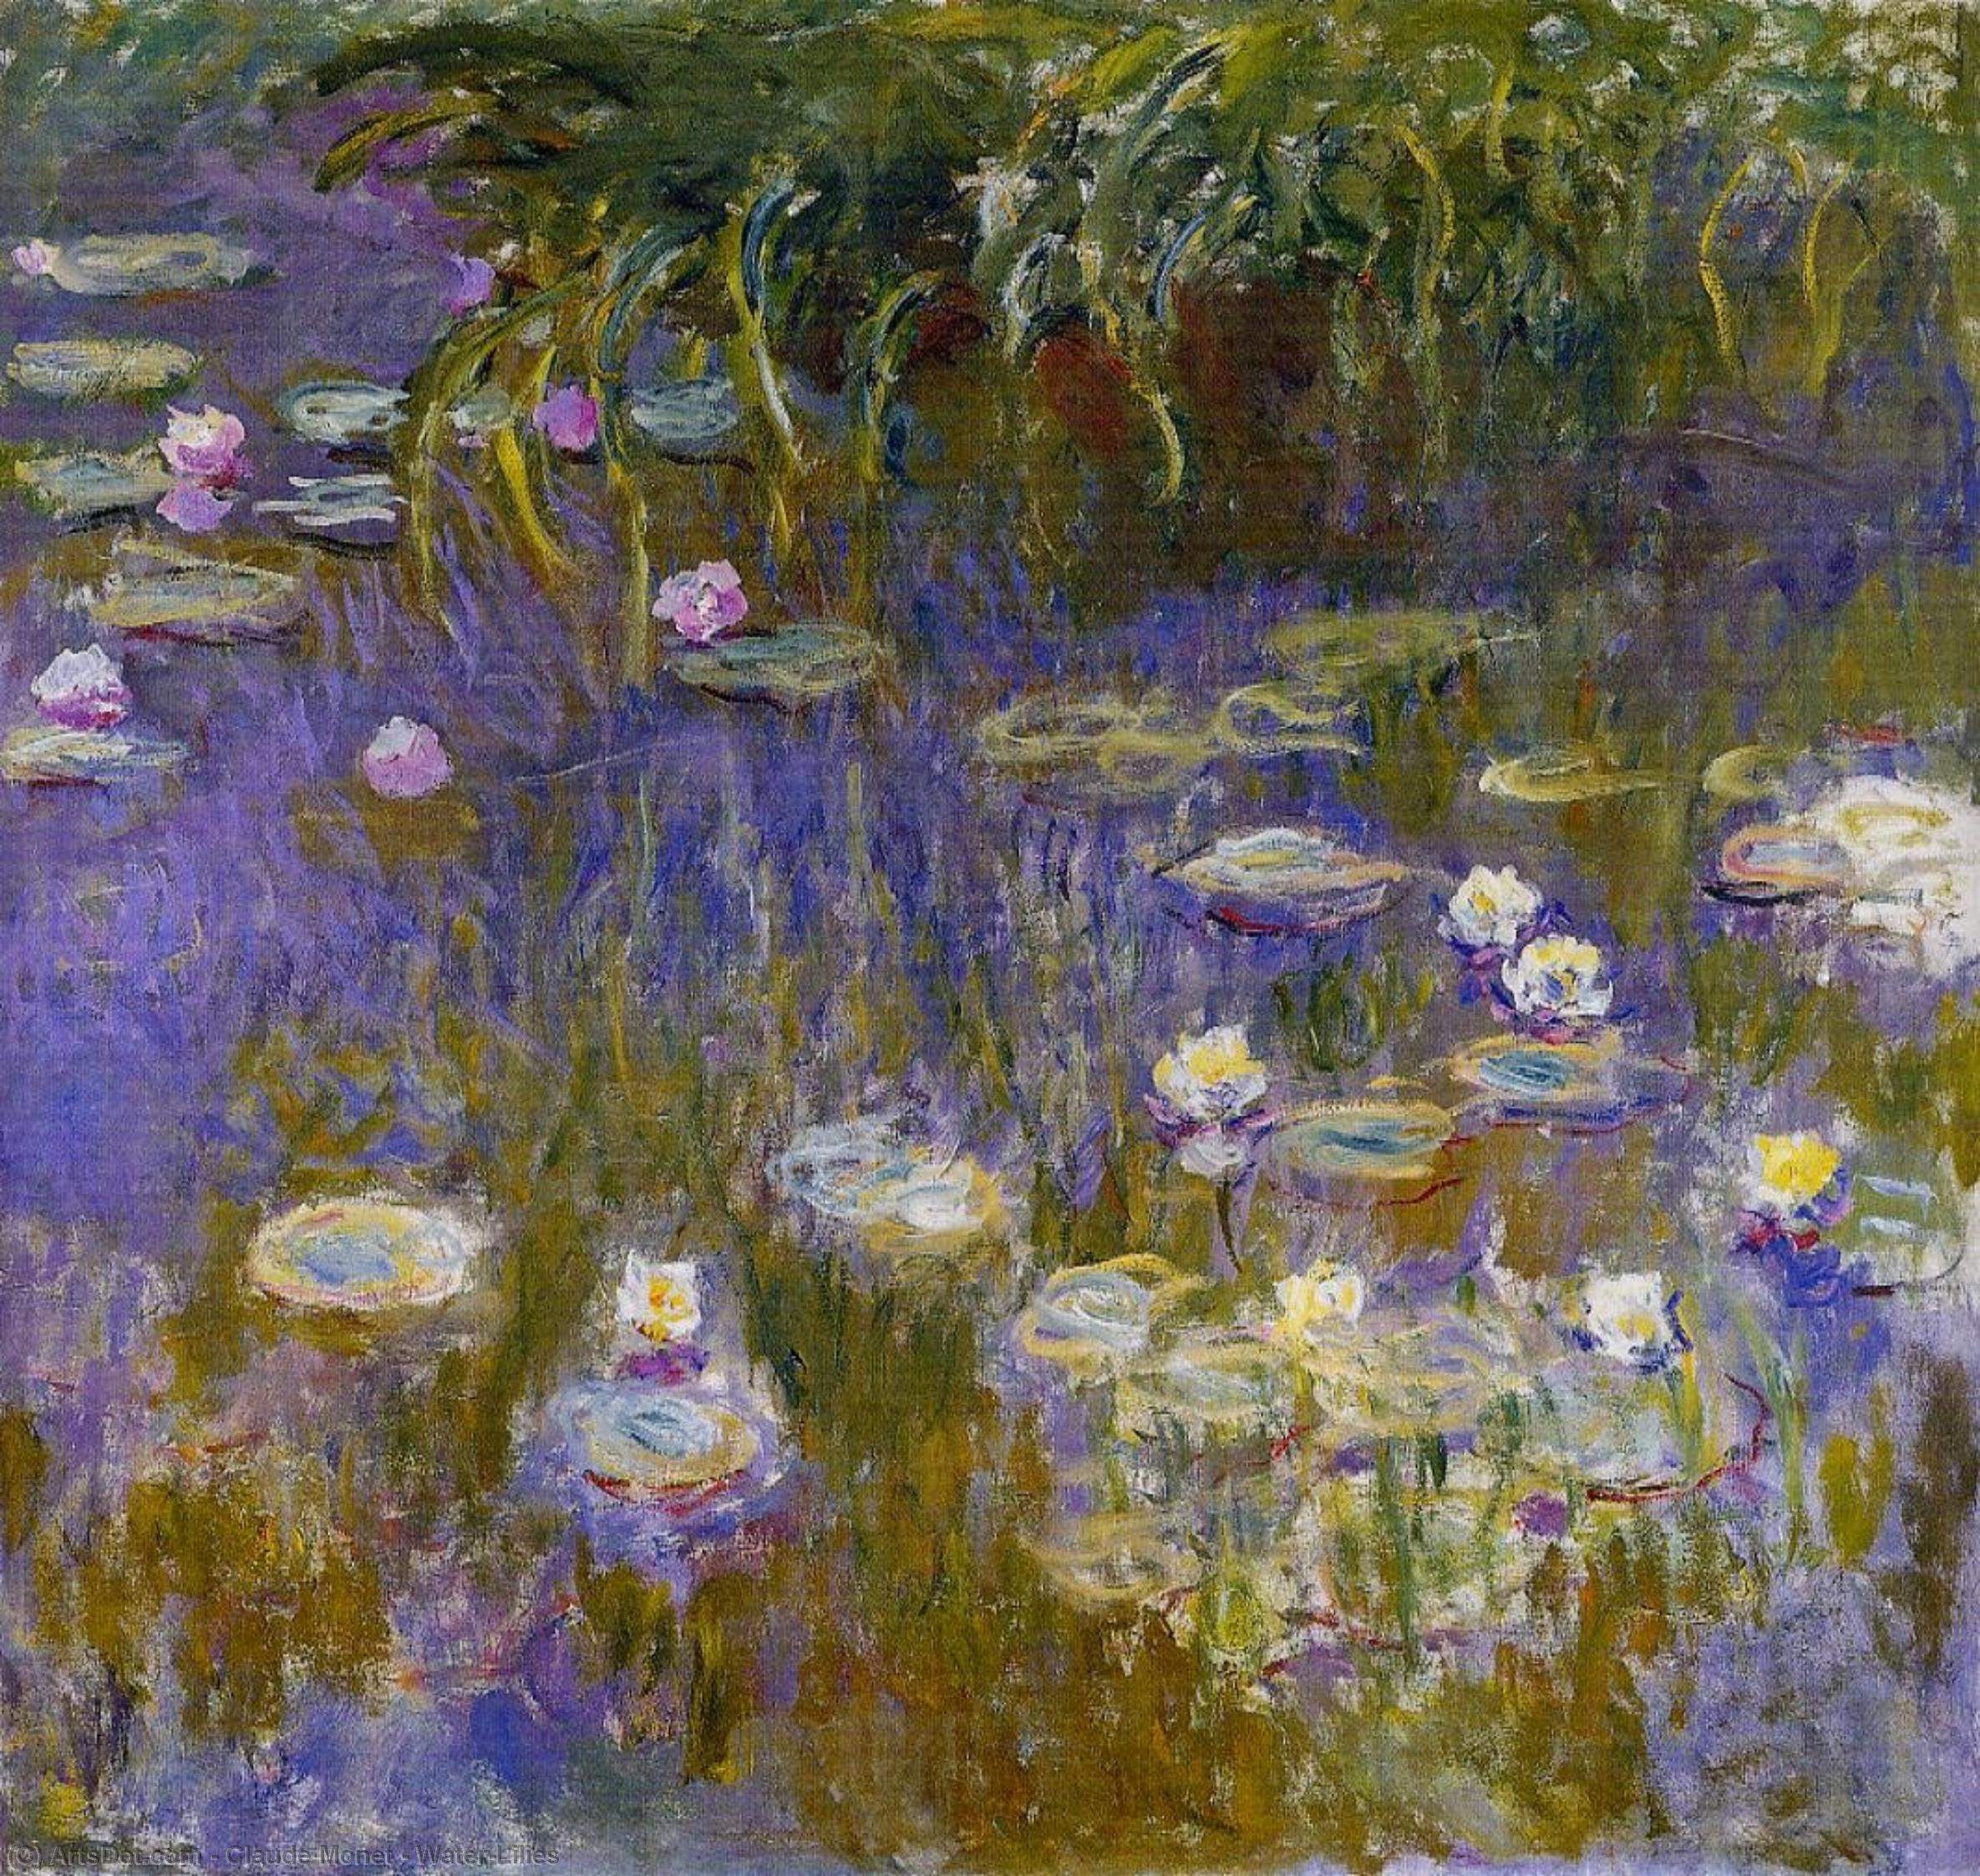 Wikioo.org - Bách khoa toàn thư về mỹ thuật - Vẽ tranh, Tác phẩm nghệ thuật Claude Monet - Water-Lilies